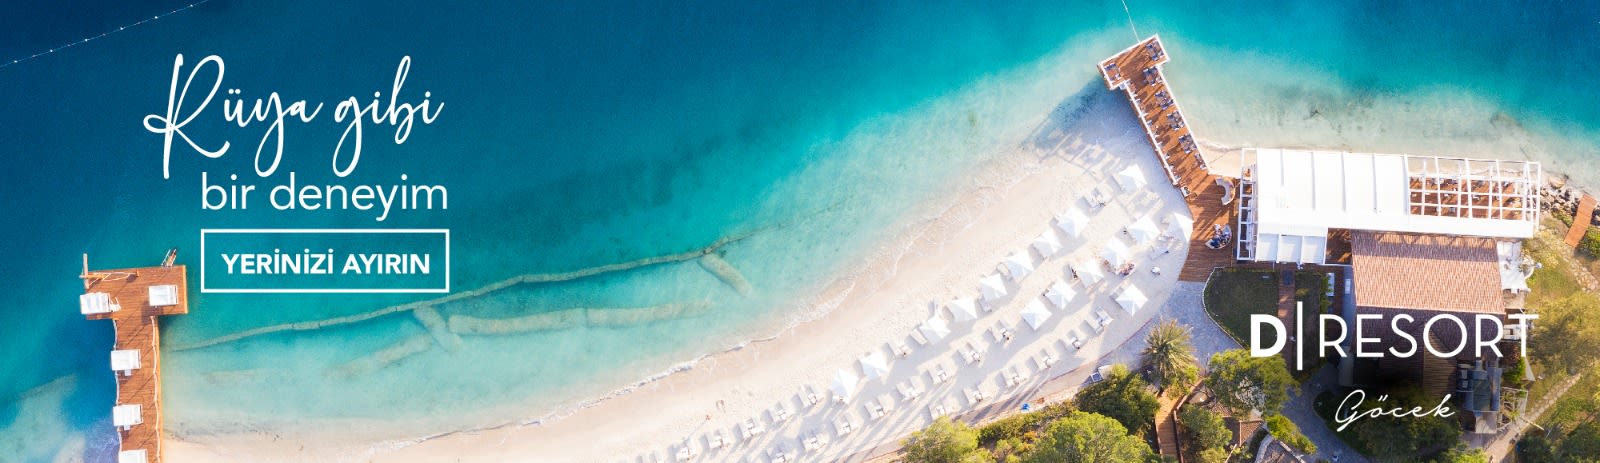 Fethiye Otelleri ve Fethiye Otel Fiyatları | Setur kampanyaları 3 